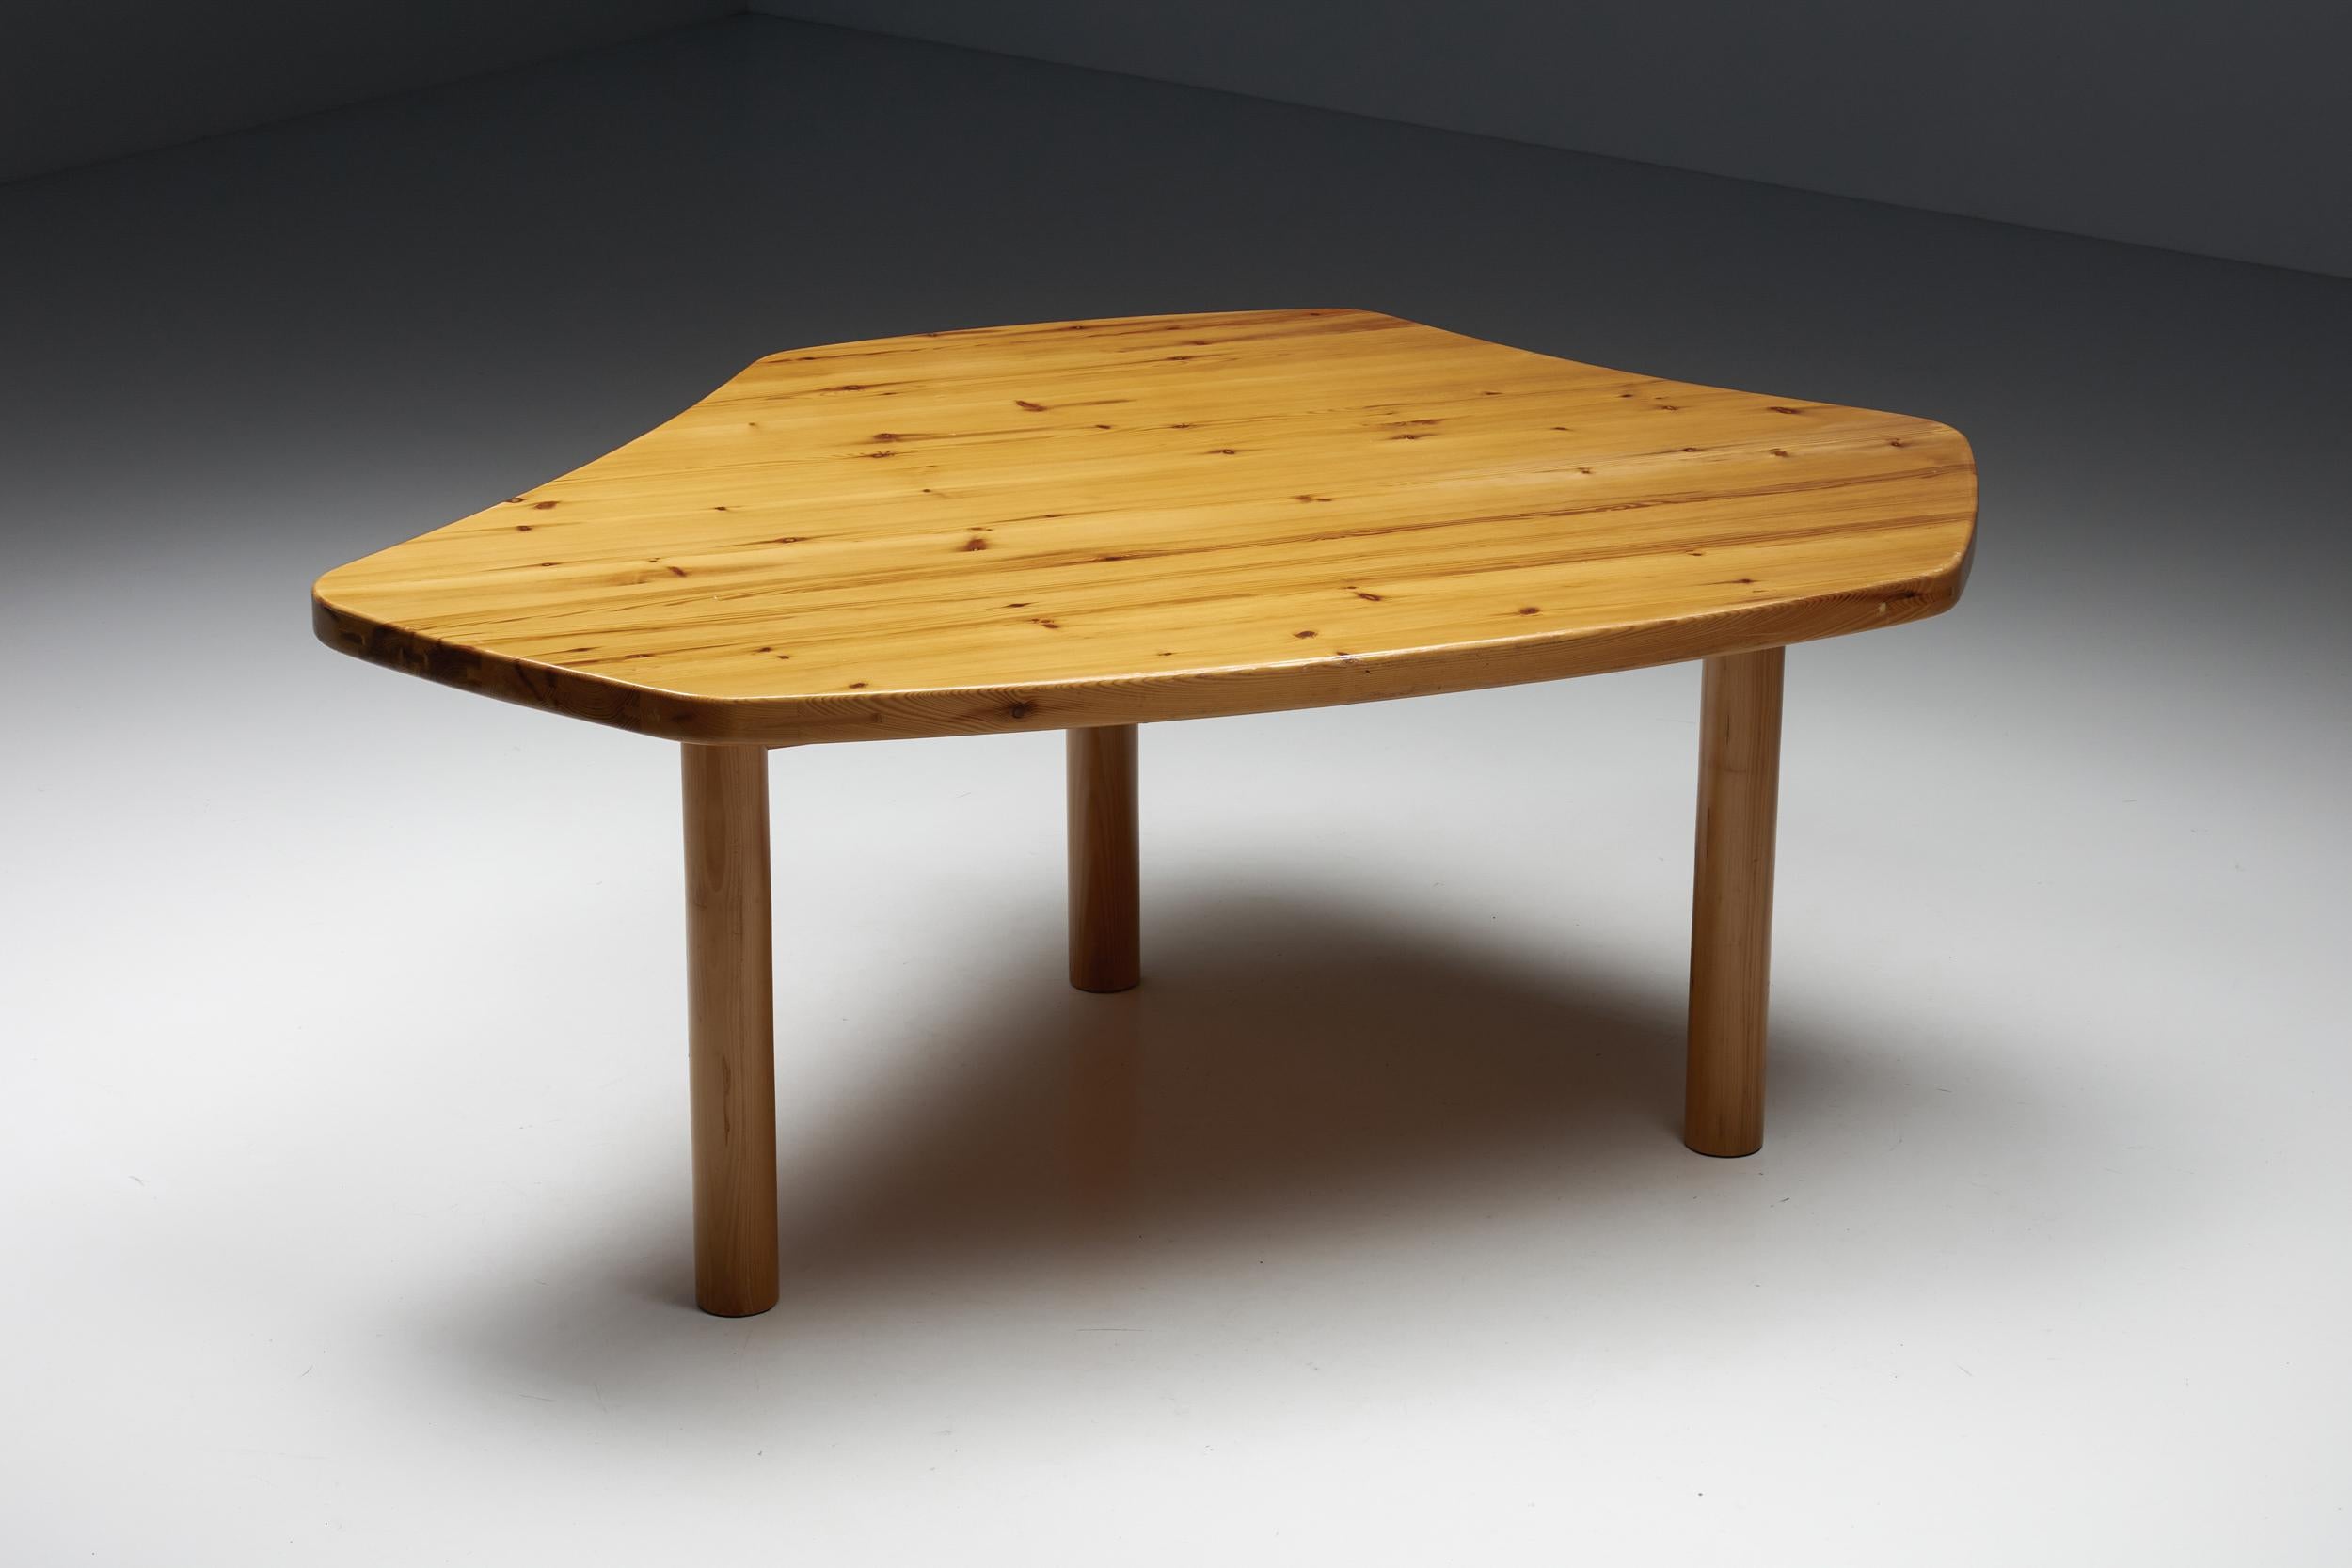 Atelier Franc, ais Perriand Les Arcs Style Dining Table, 1960's.

Table à manger en bois fabriquée en France dans les années 1960. Le plateau de la table est incurvé de manière très libre, ce qui donne une impression à la fois organique et